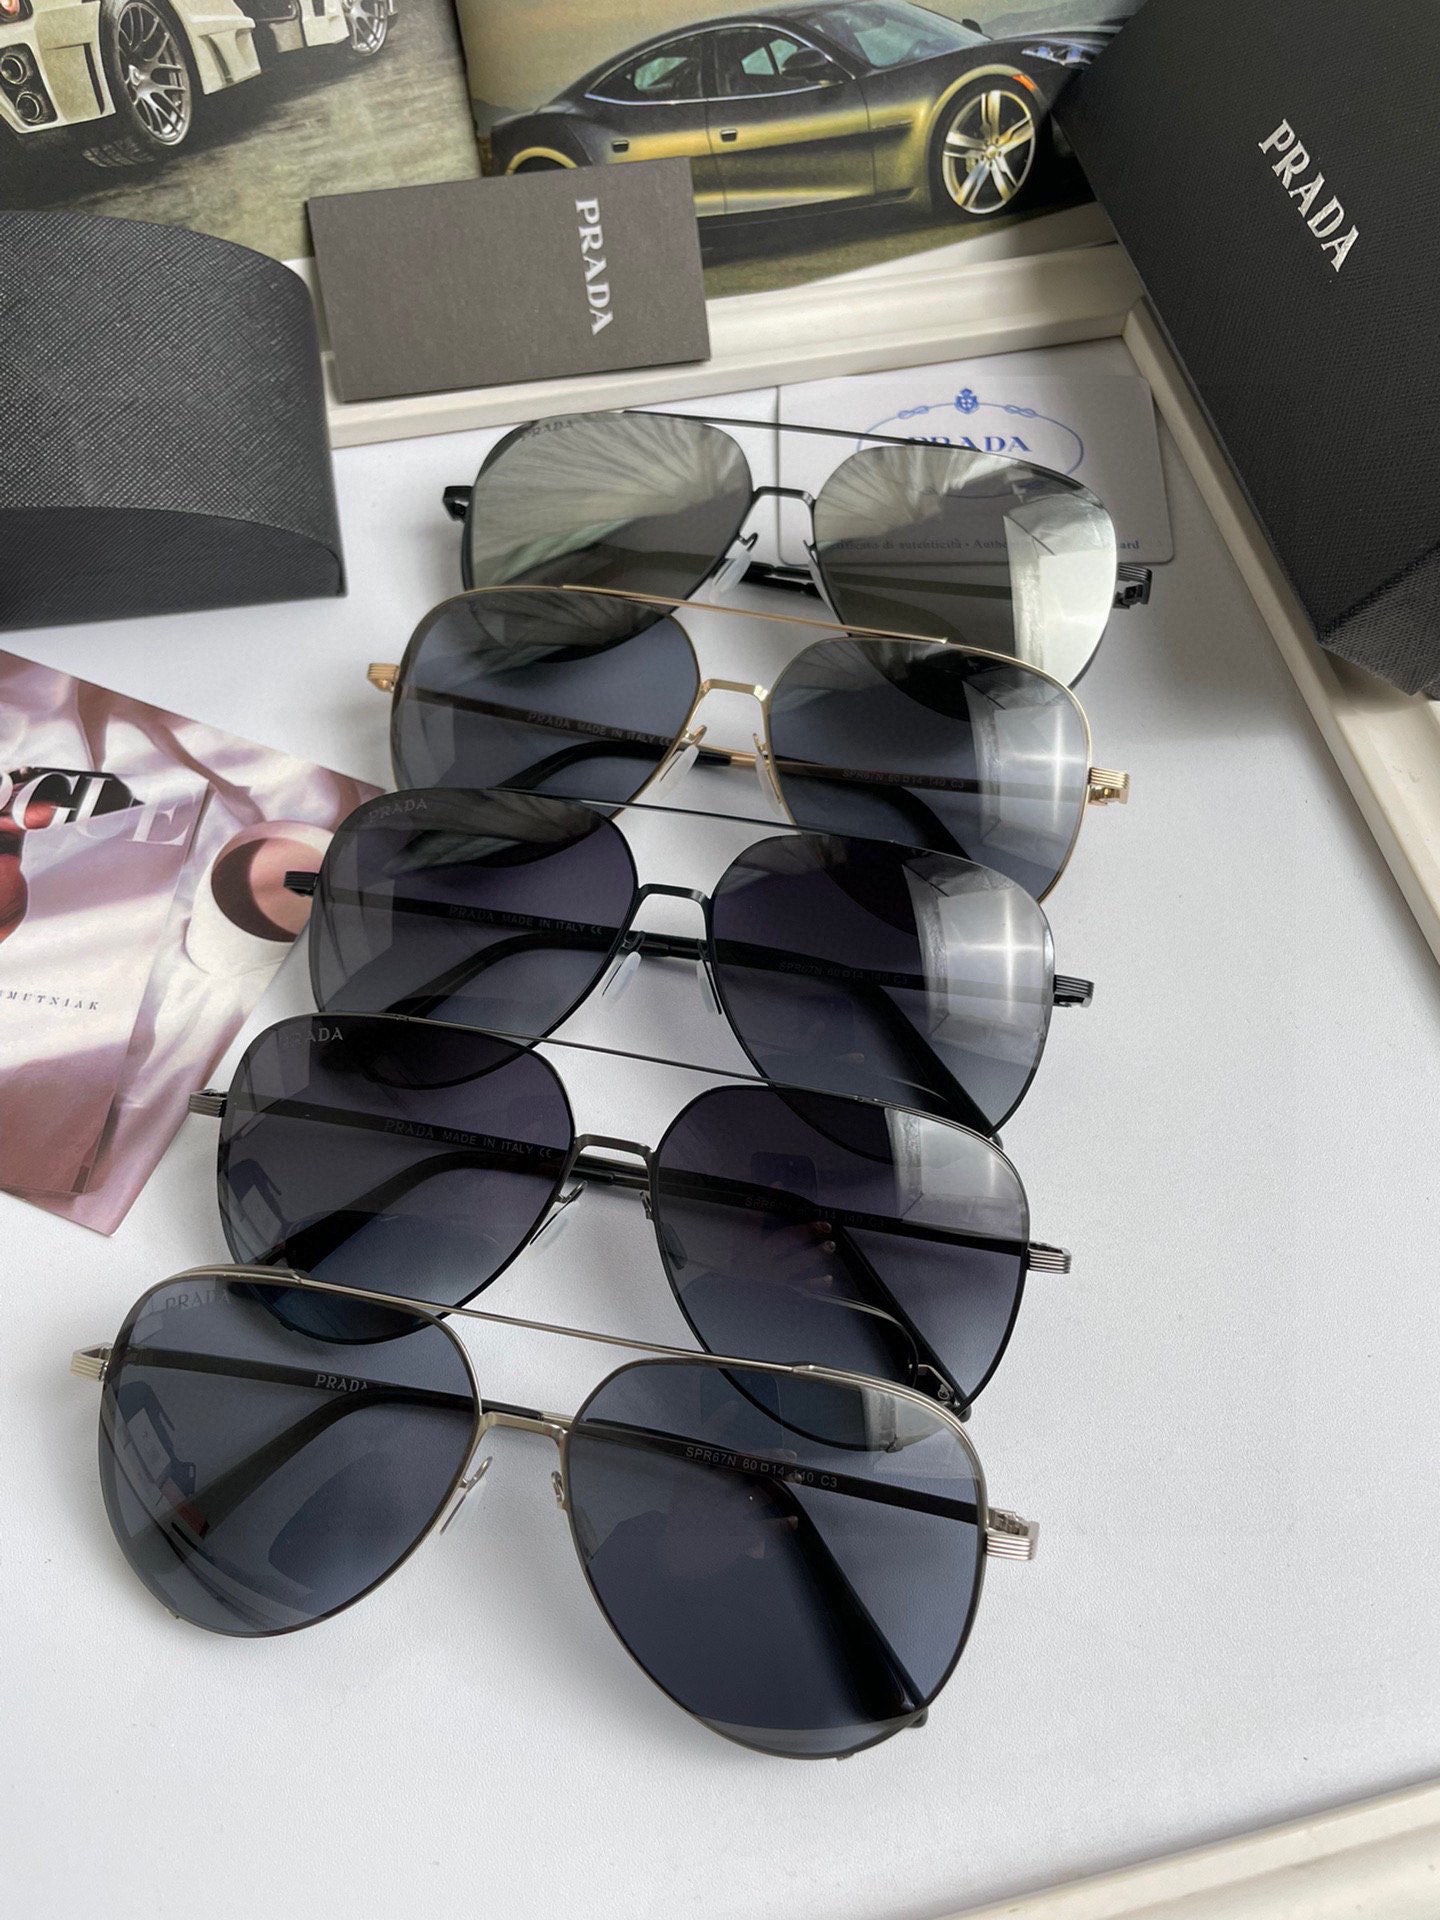 新款品牌普拉达Prada高品质男士女士原单太阳镜️材质高清尼龙镜片超轻超有弹性镜腿.戴上超轻不压鼻入手超